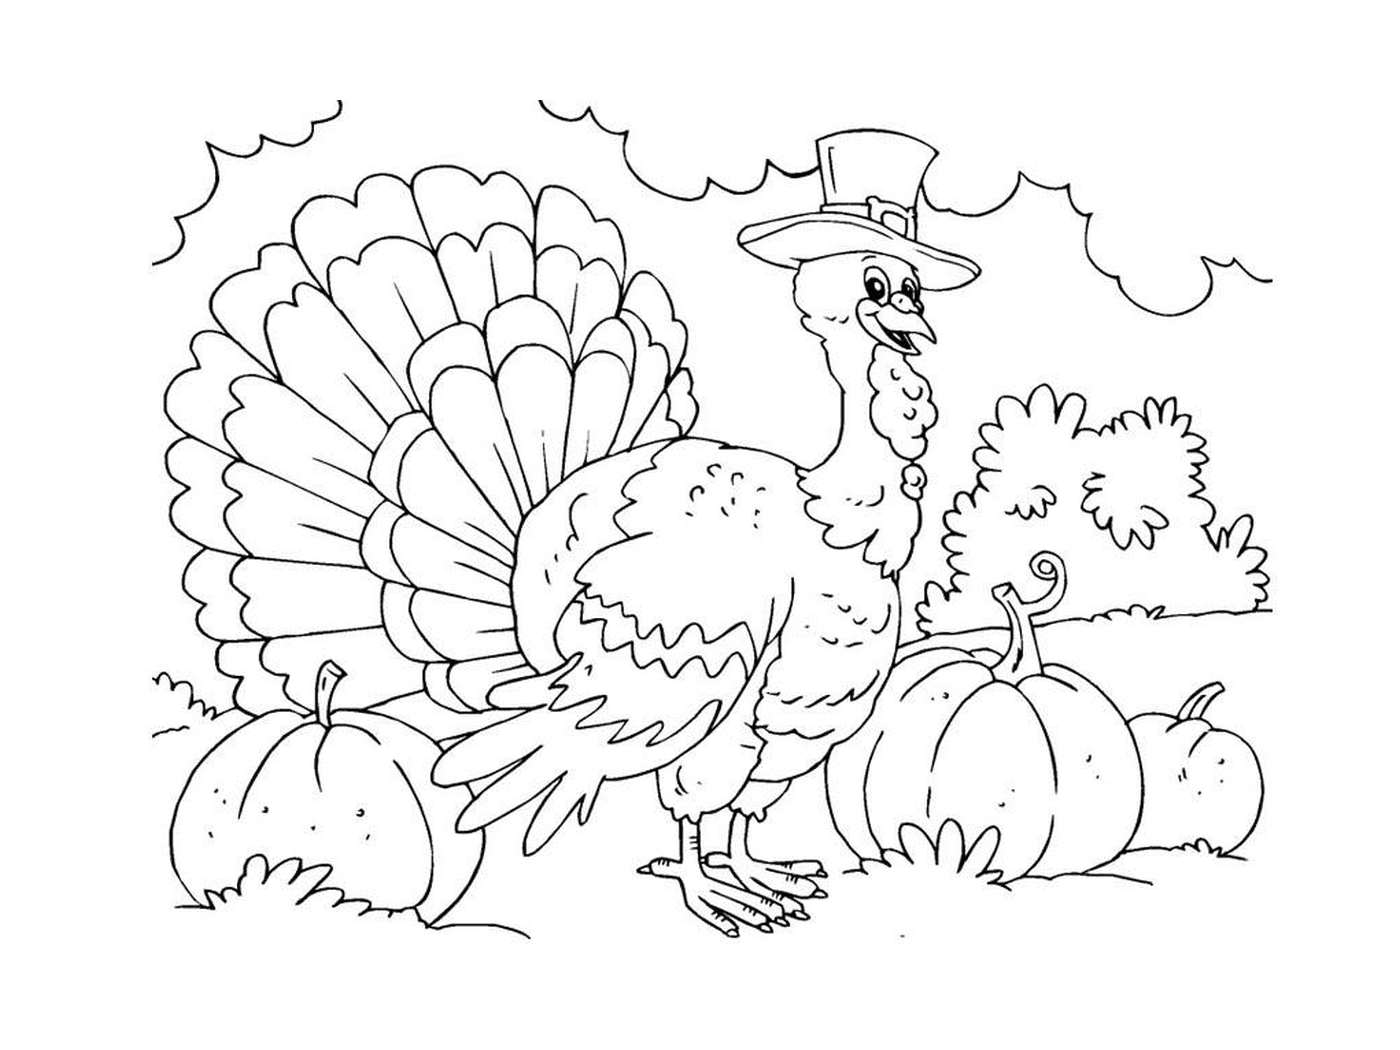  A turkey wearing a high-shape hat 